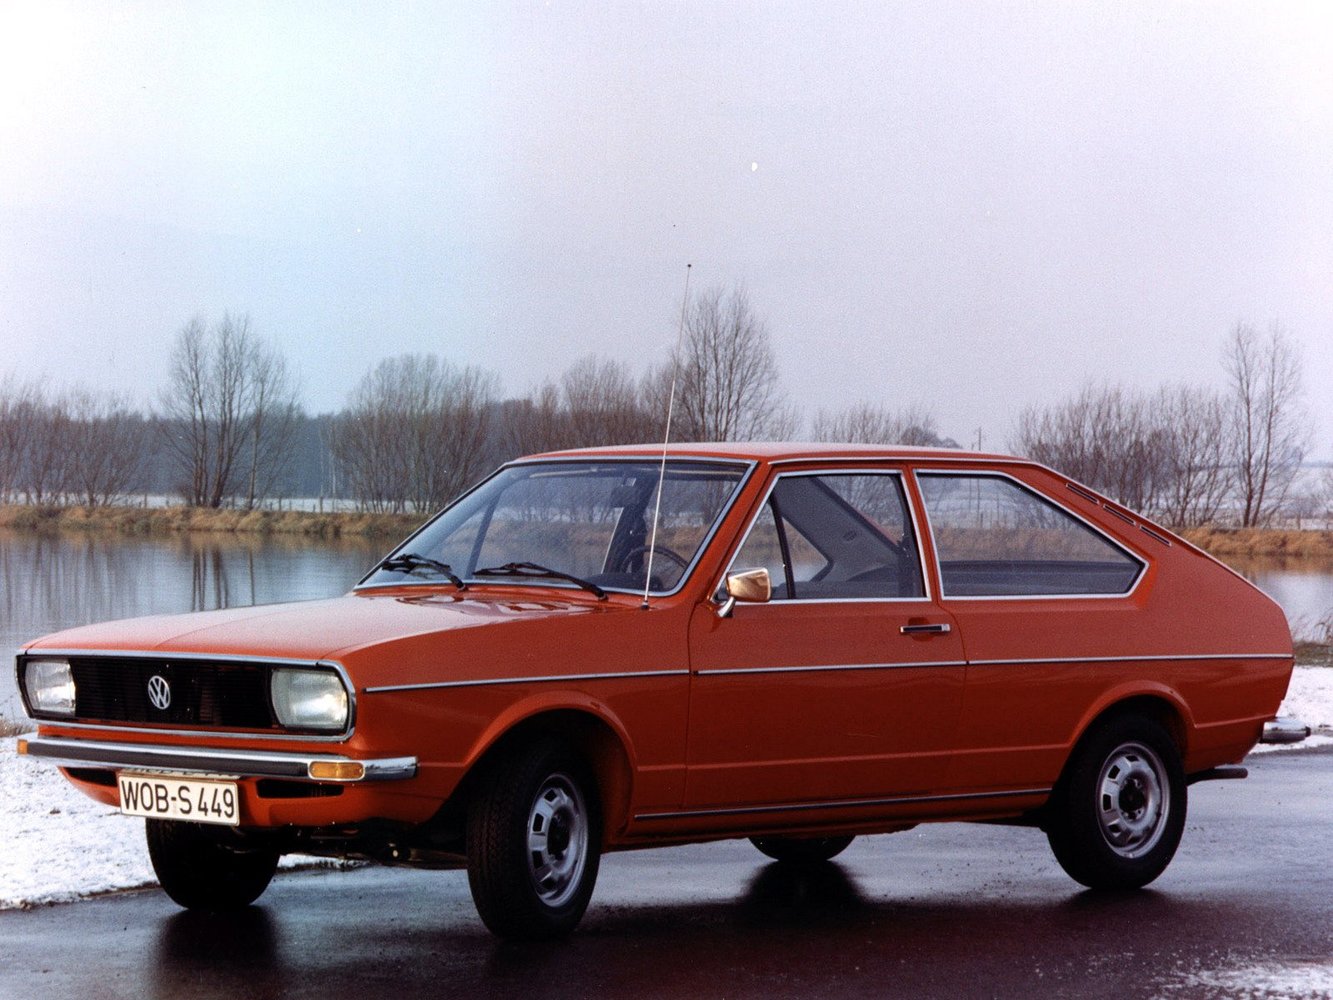 хэтчбек 3 дв. Volkswagen Passat 1973 - 1980г выпуска модификация 1.3 MT (55 л.с.)